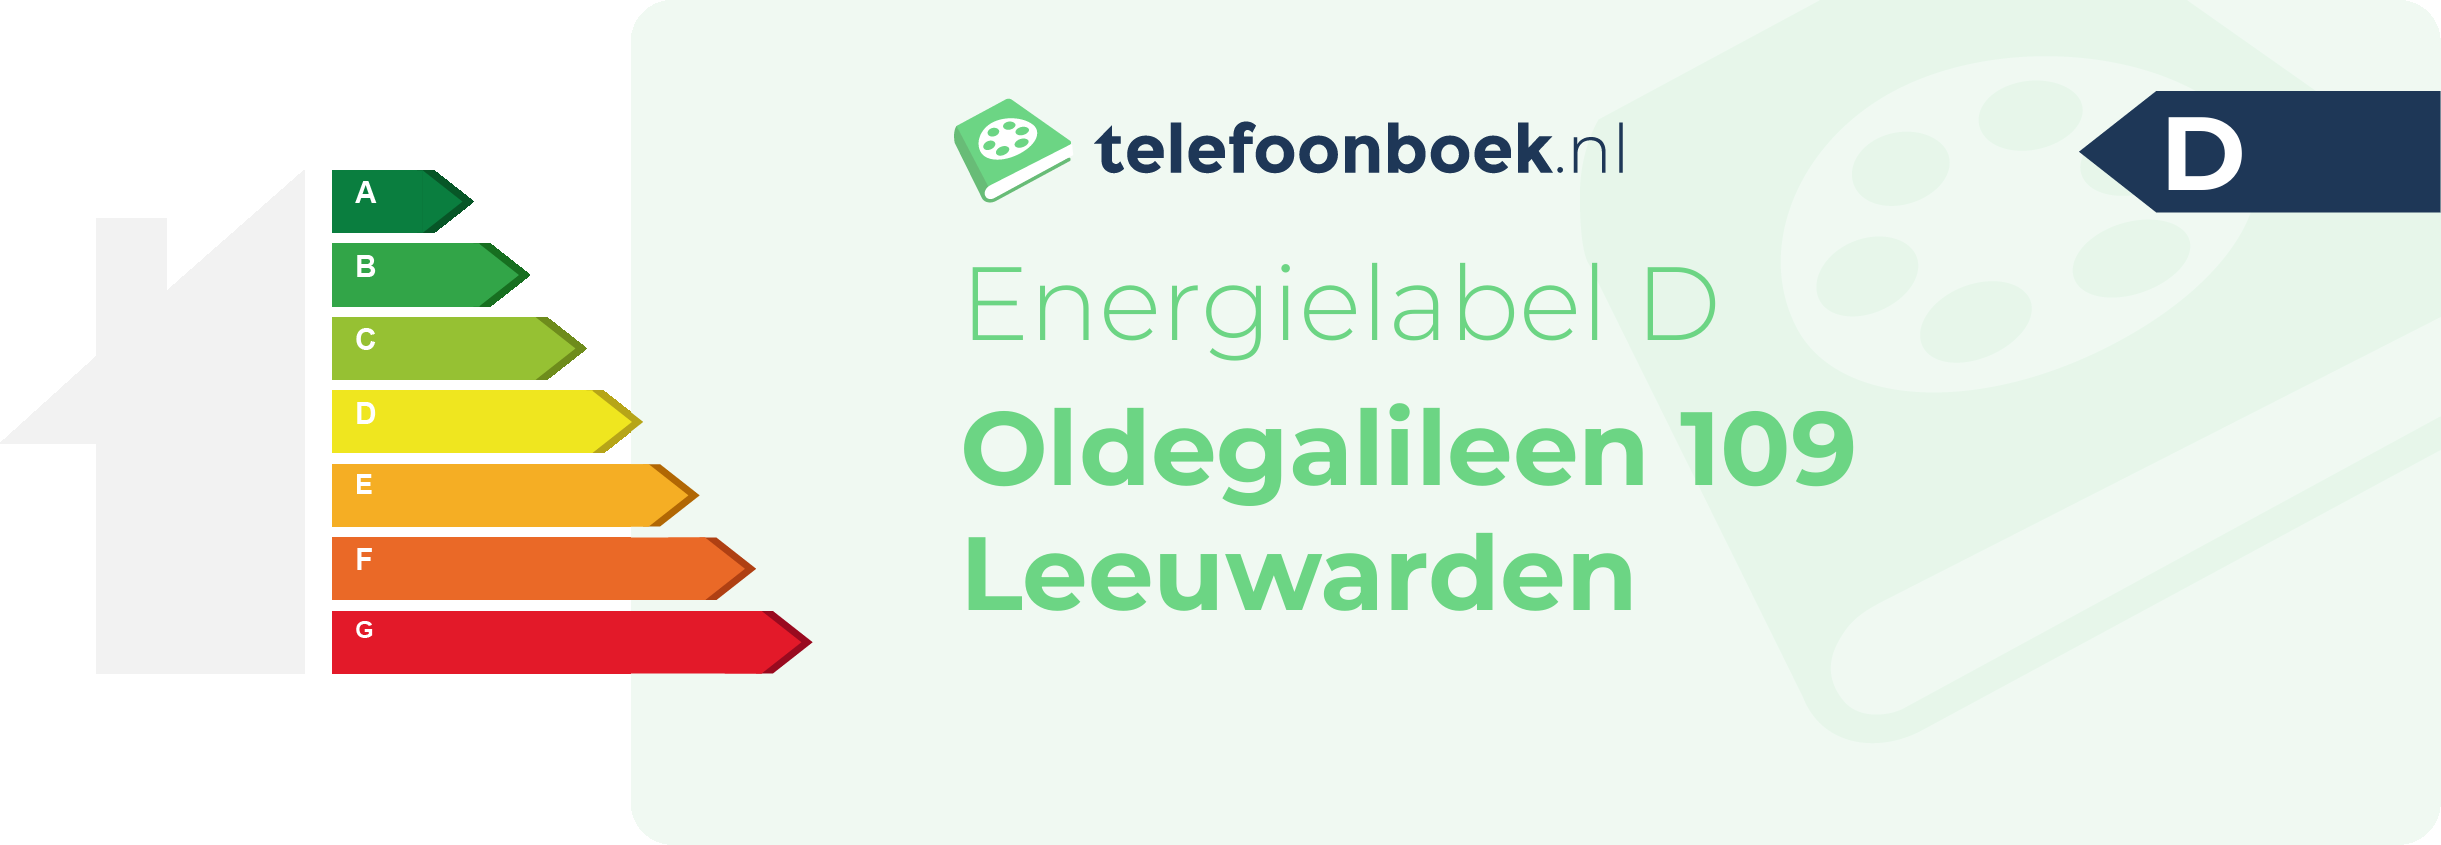 Energielabel Oldegalileen 109 Leeuwarden